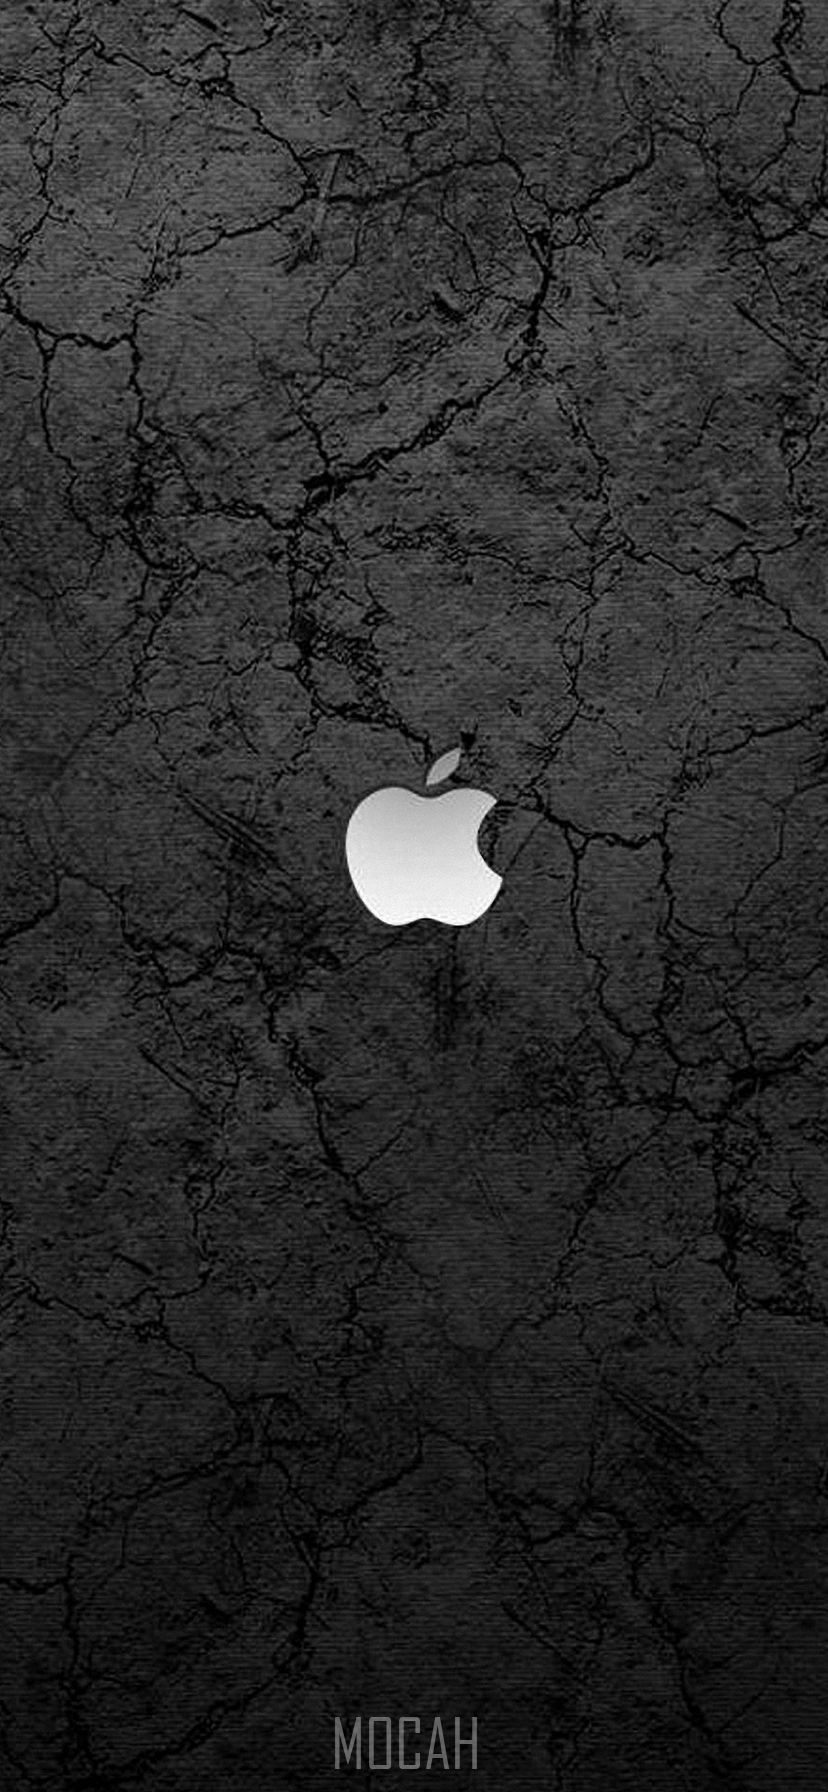 Apple, Black, Light, Tree, Darkness, Apple iPhone XR wallpaper free download, 828x1792 HD Wallpaper